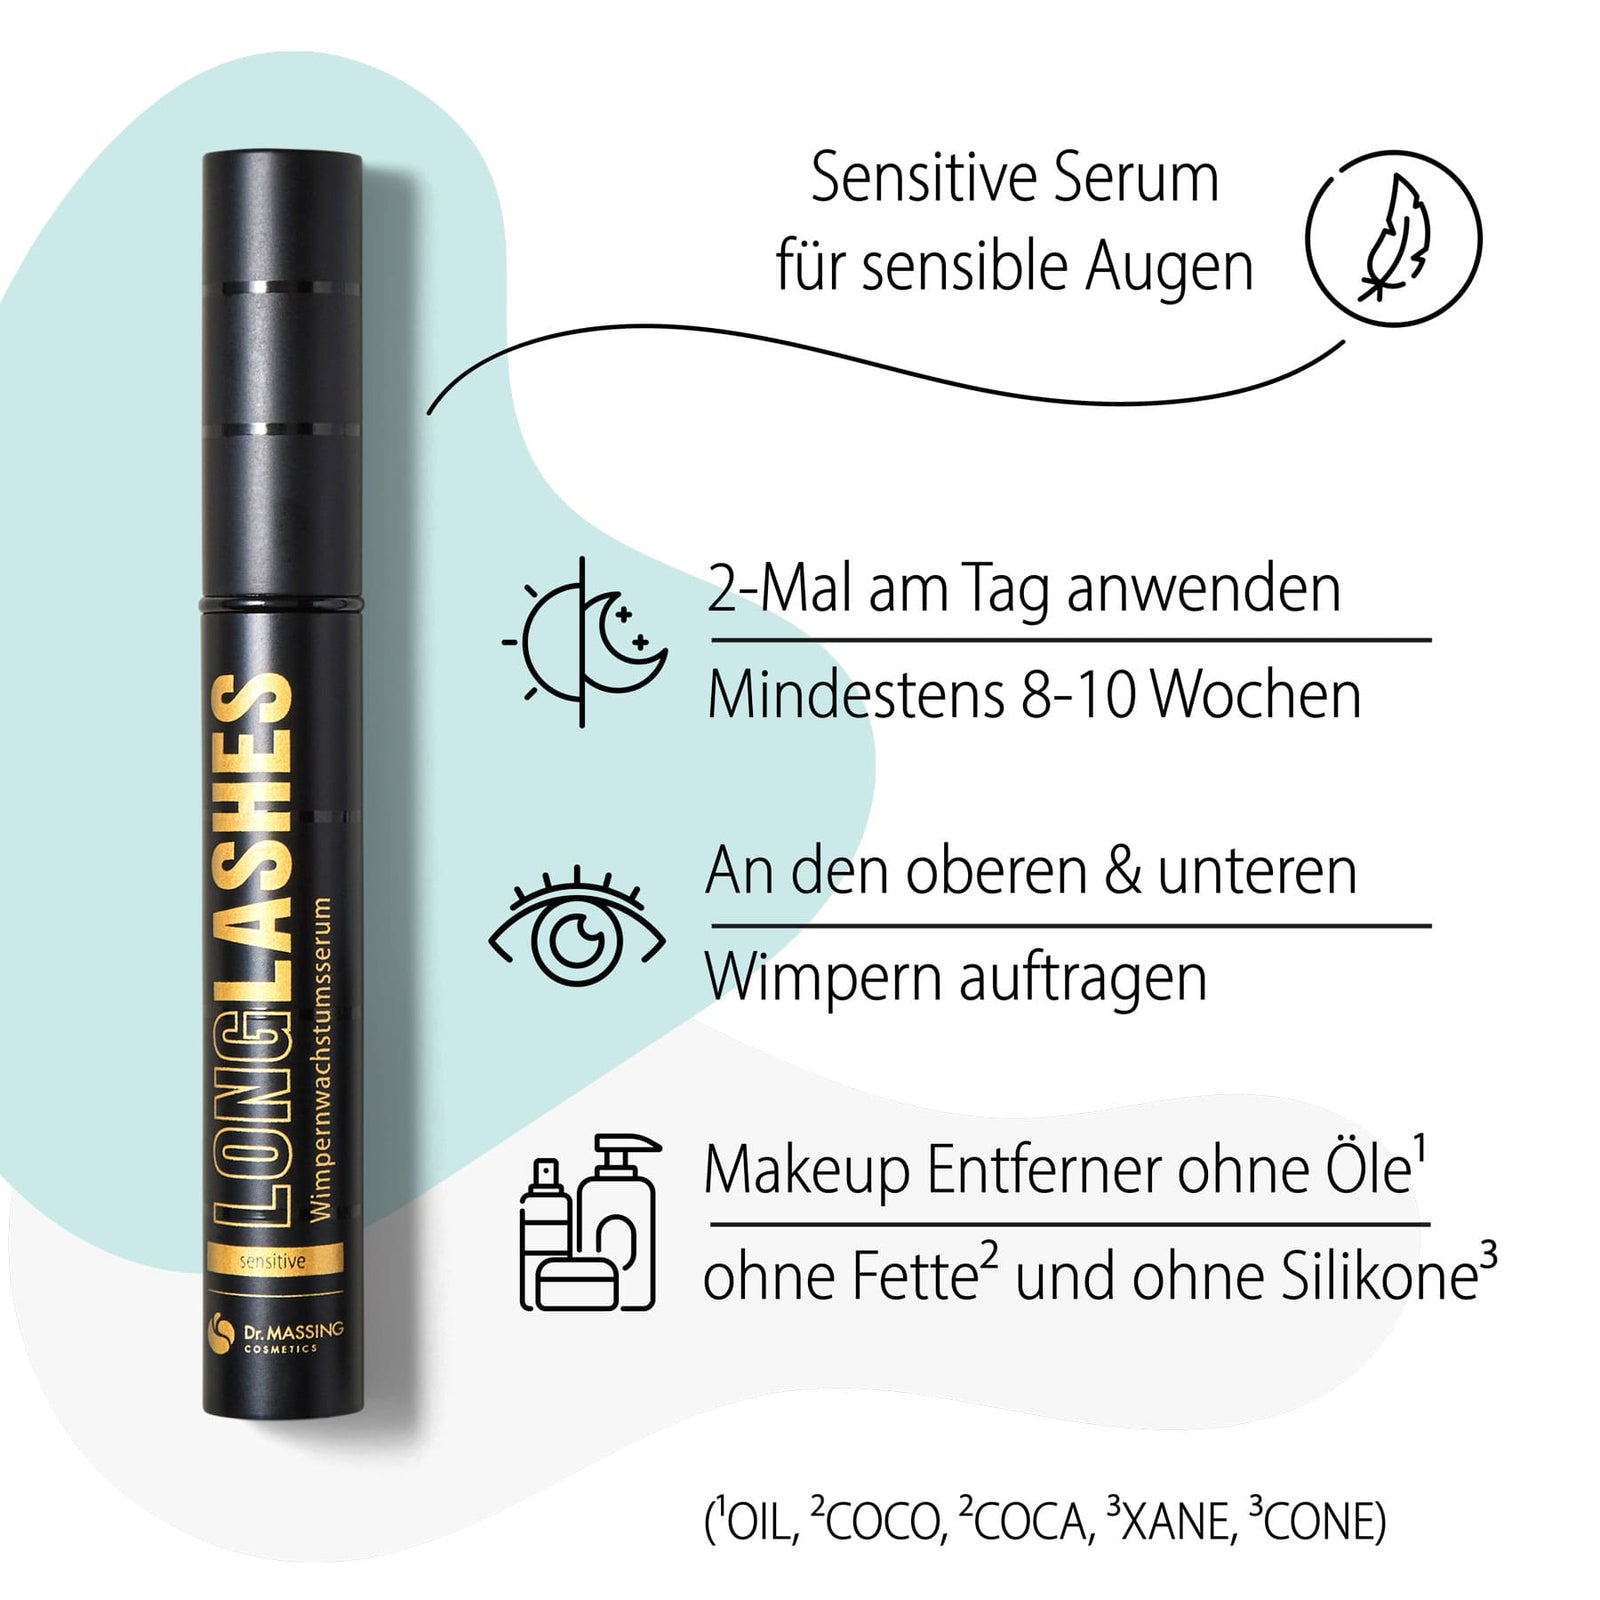 Dr. Massing pflanzliches Wimpernserum Love Edition mit Wimpernserum und Lippenpflege Details Vorteile Sensitiv Serum Übersicht 01